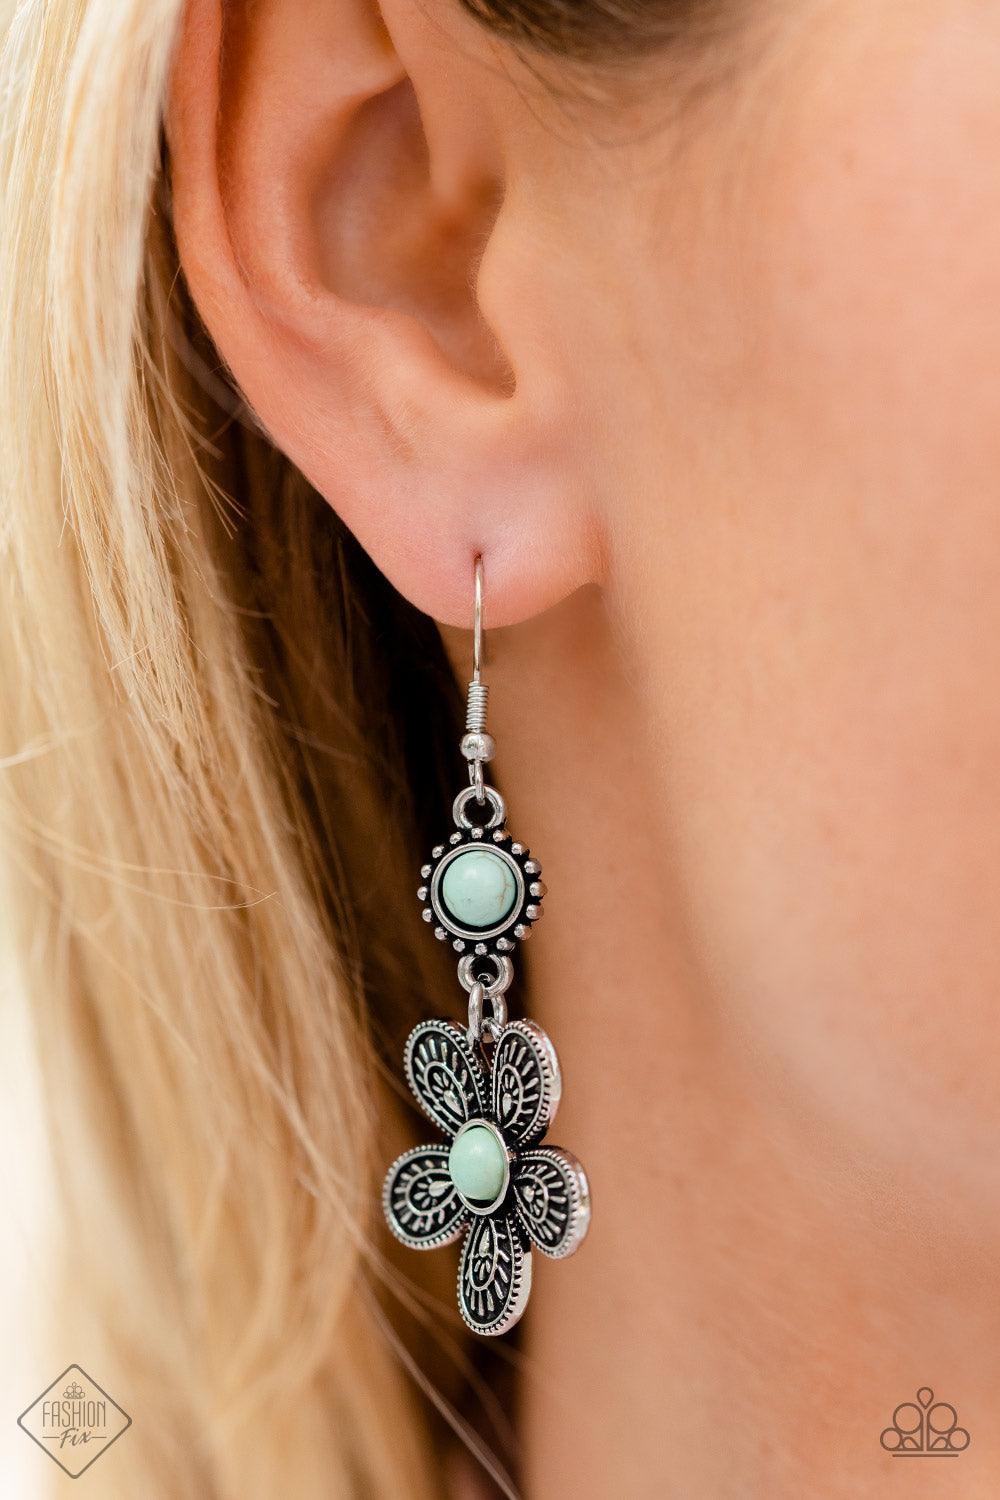 Free-Spirited Flourish Blue Earrings - Jewelry by Bretta